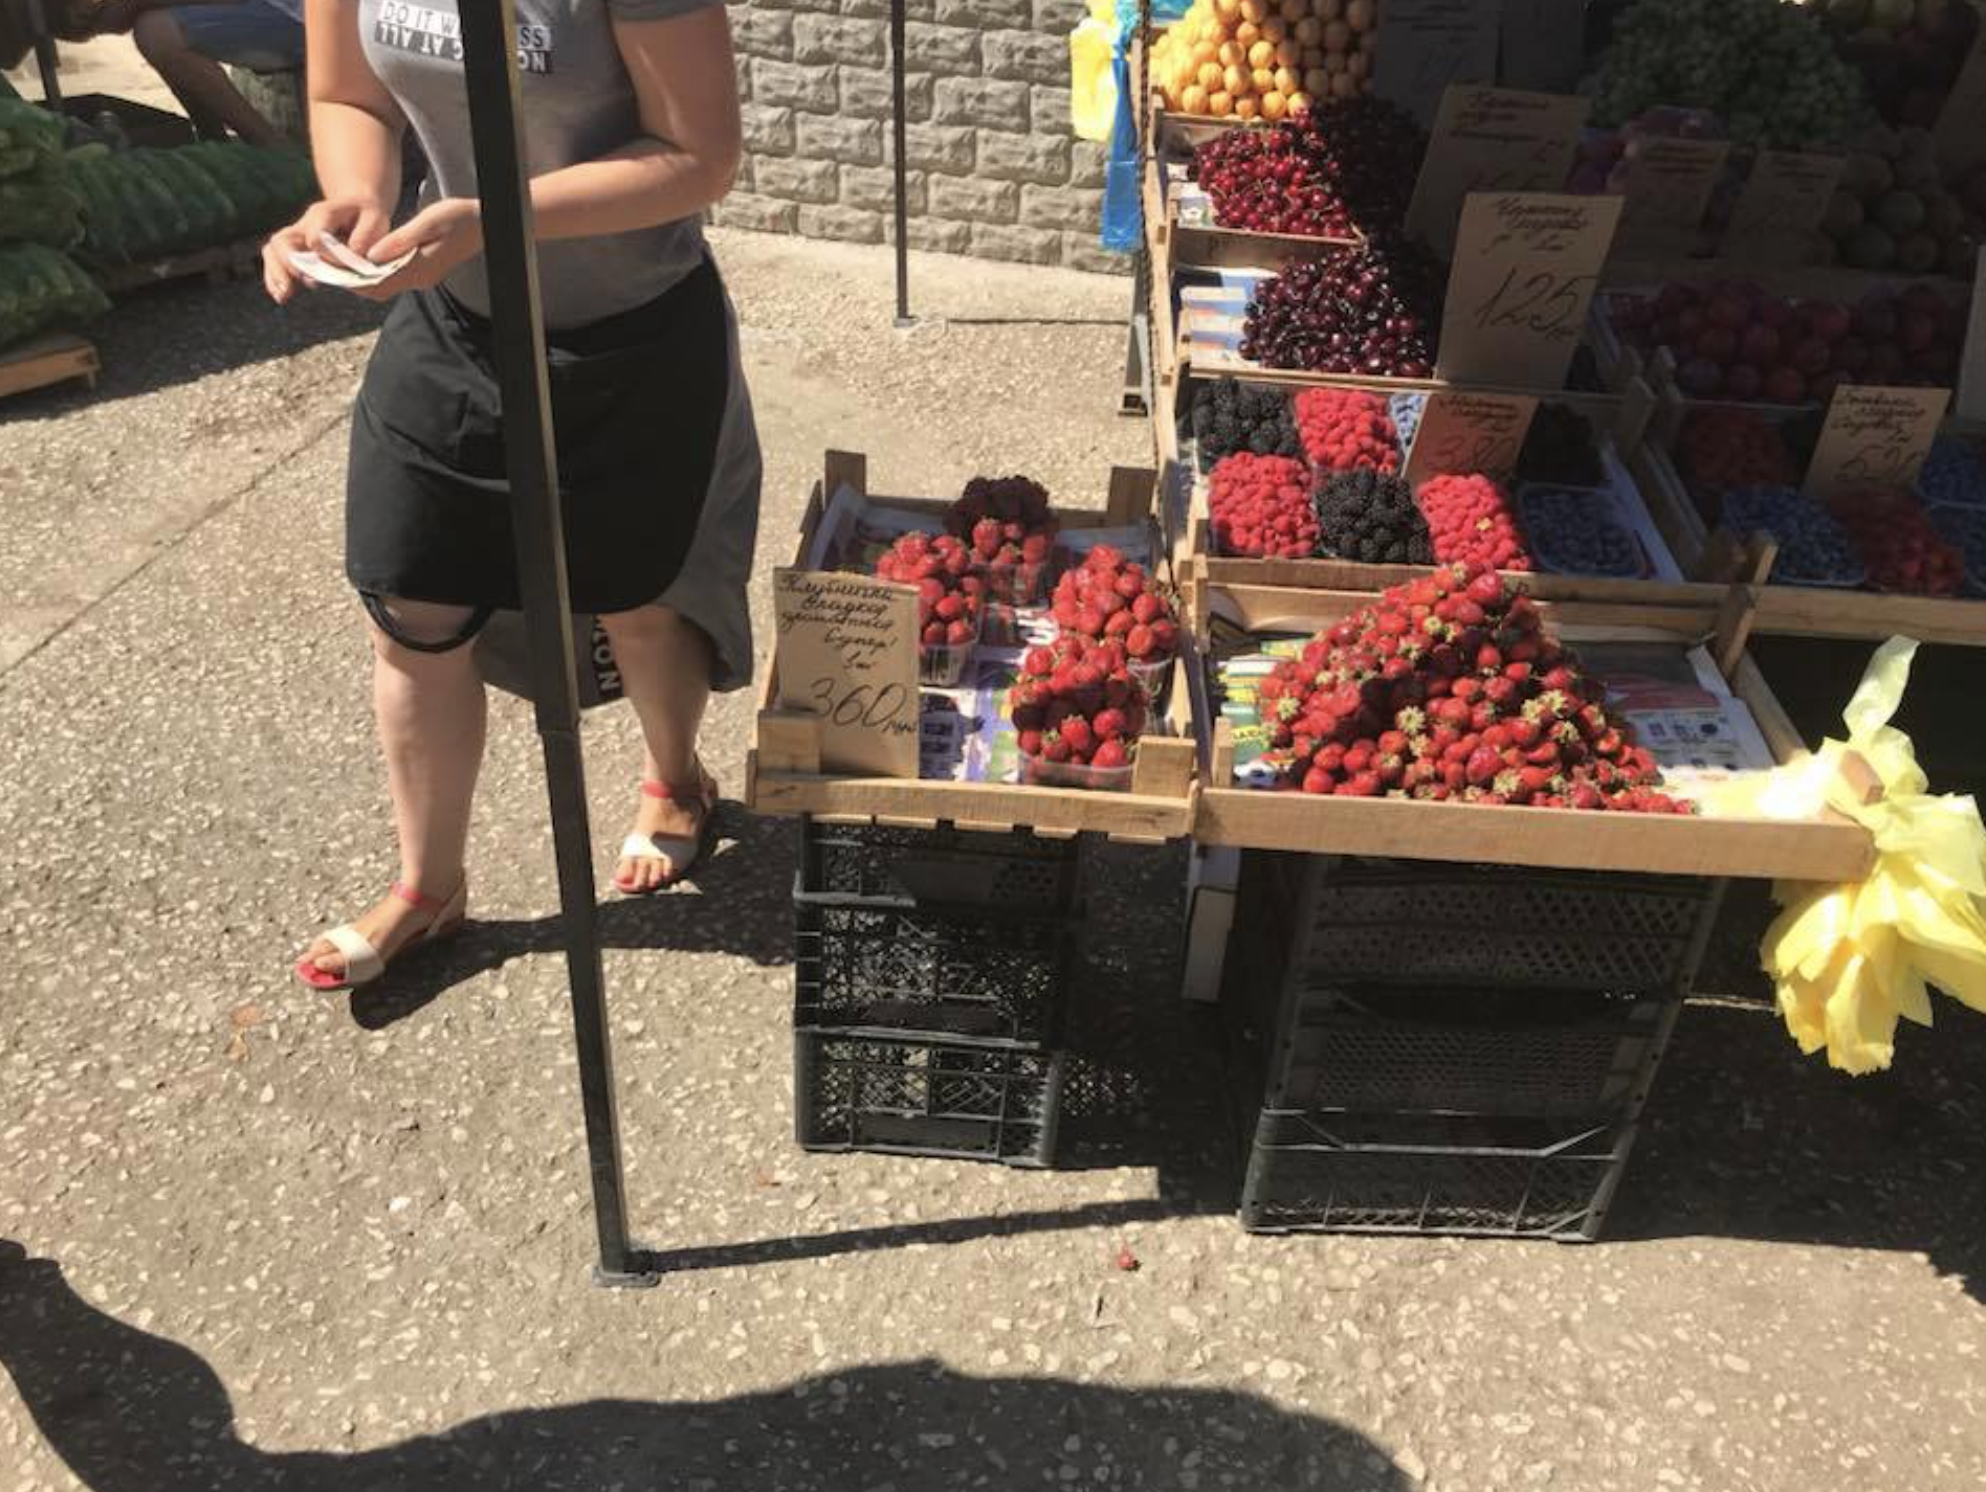 "Сгниет от жадности": в сети показали заоблачные цены на фрукты в Крыму